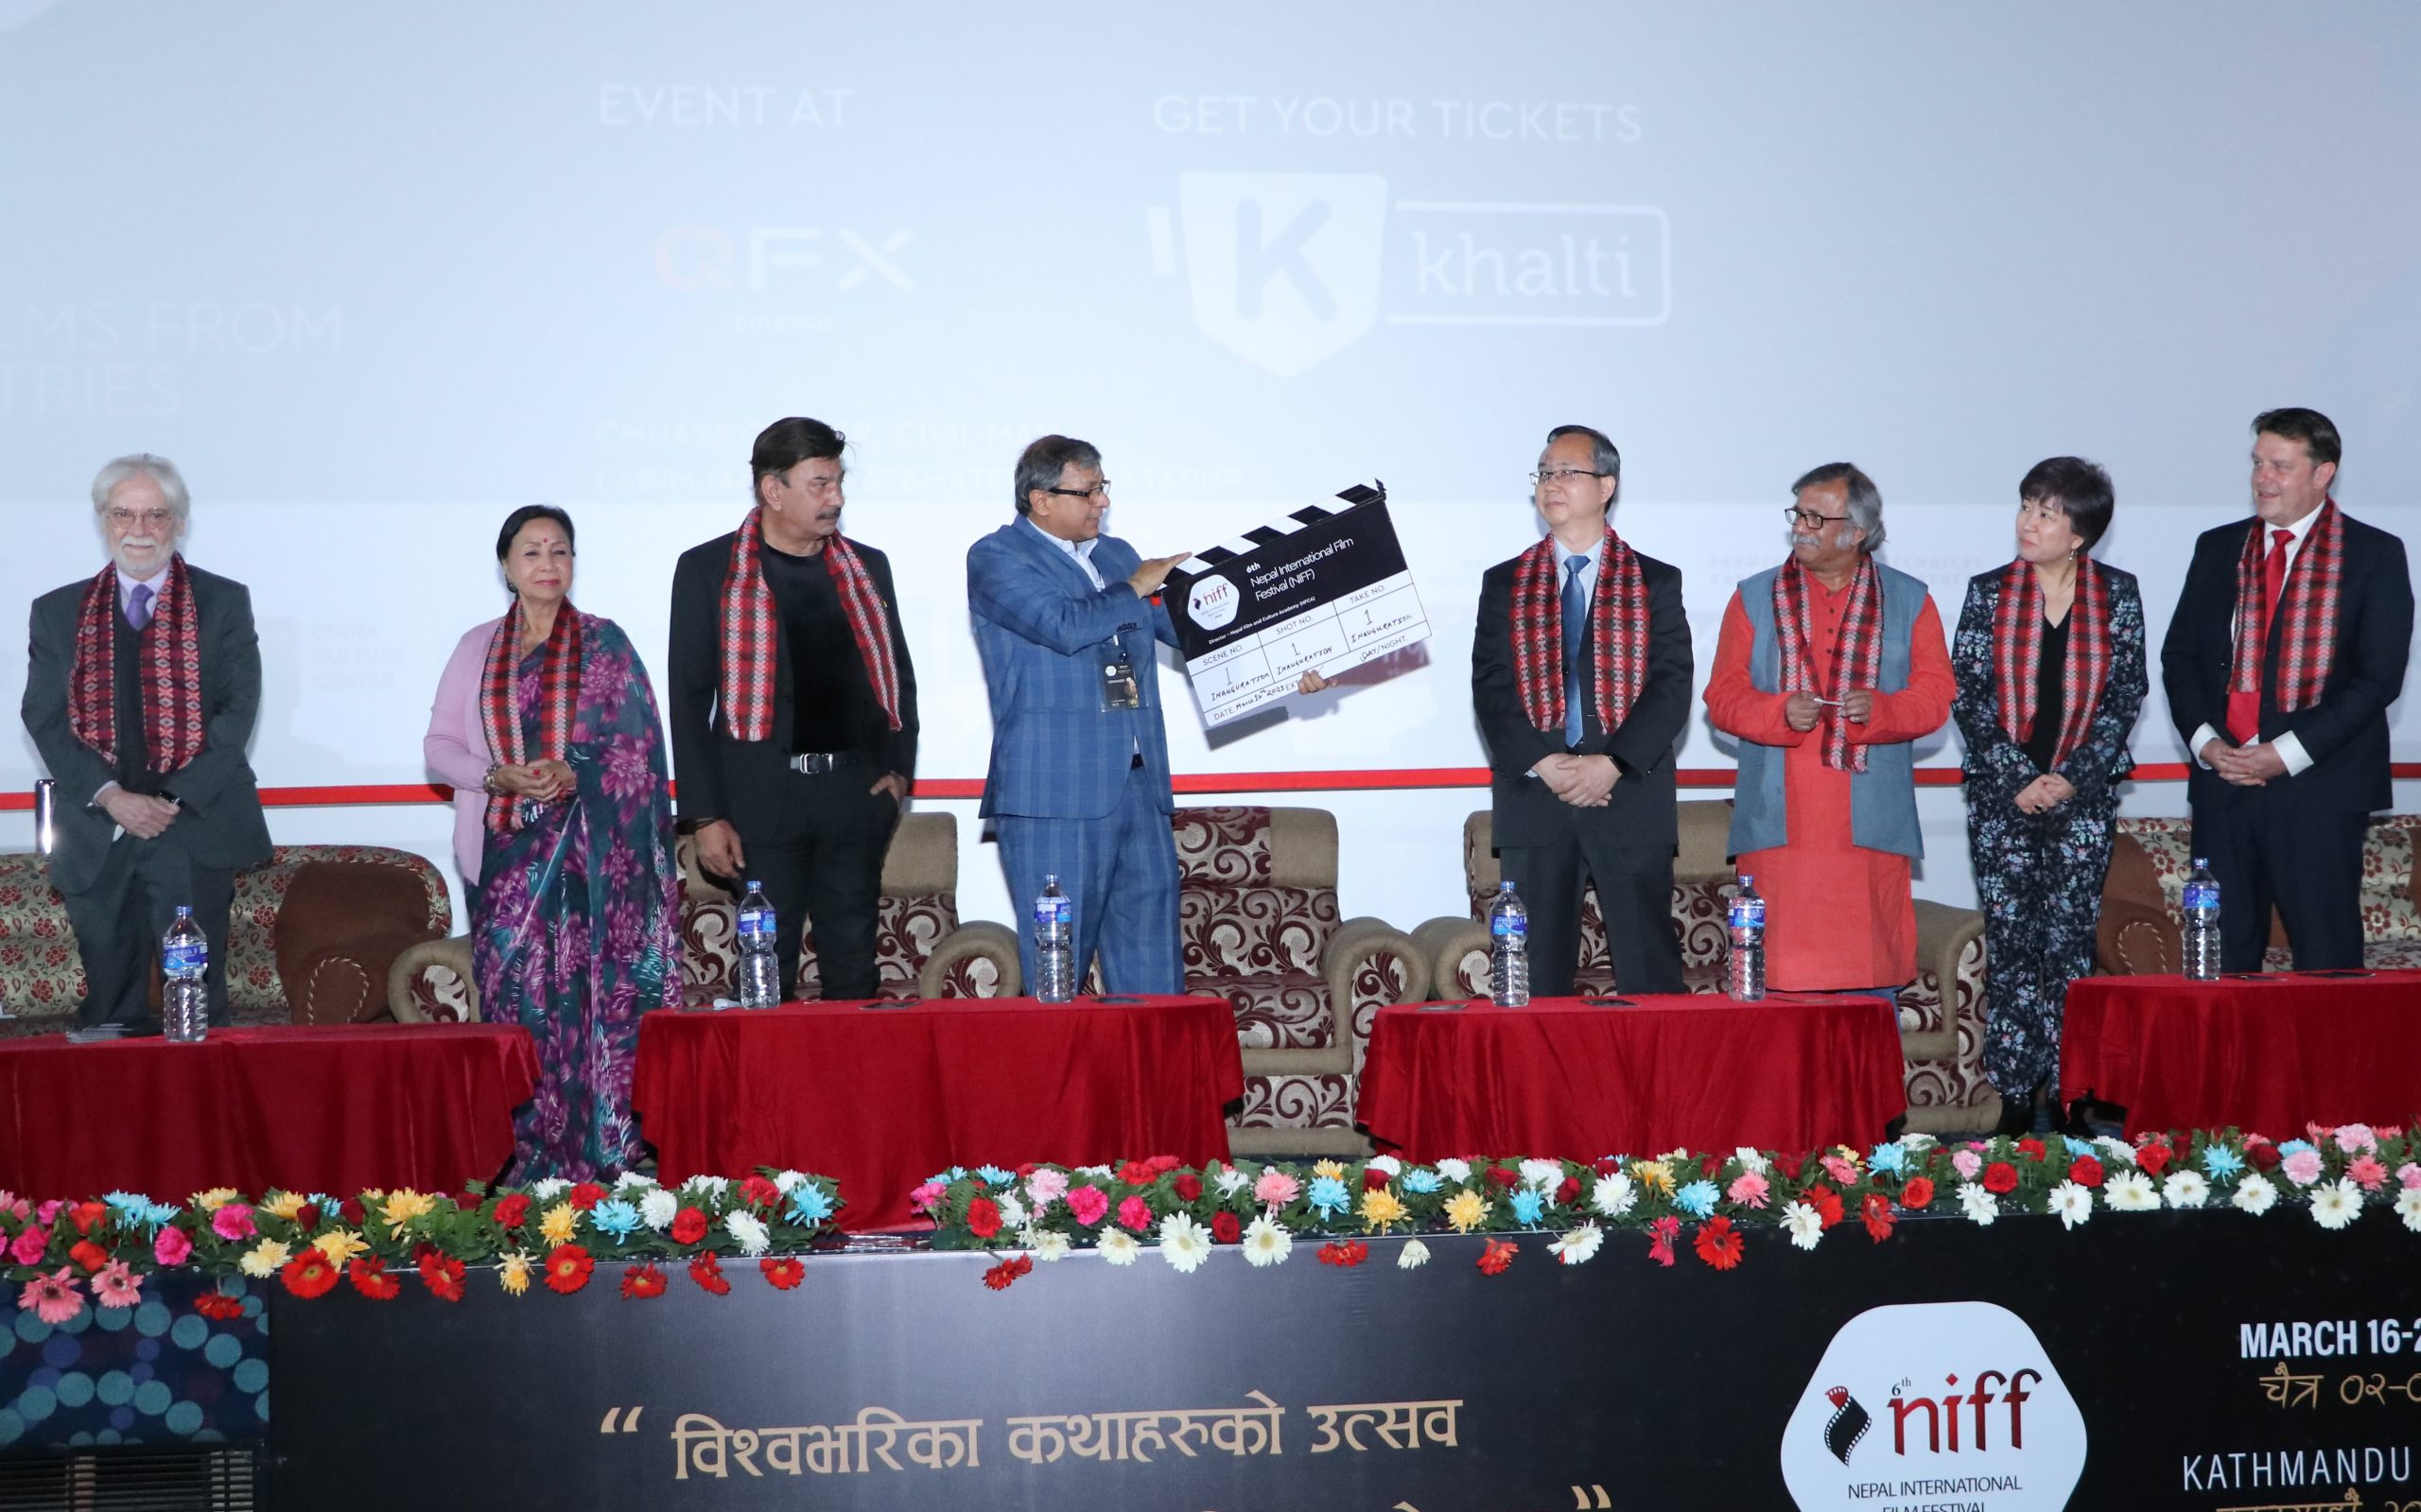 नेपाल अन्तर्राष्ट्रिय चलचित्र महोत्सवको छैटौँ संस्करण काठमाडौँमा सुरू